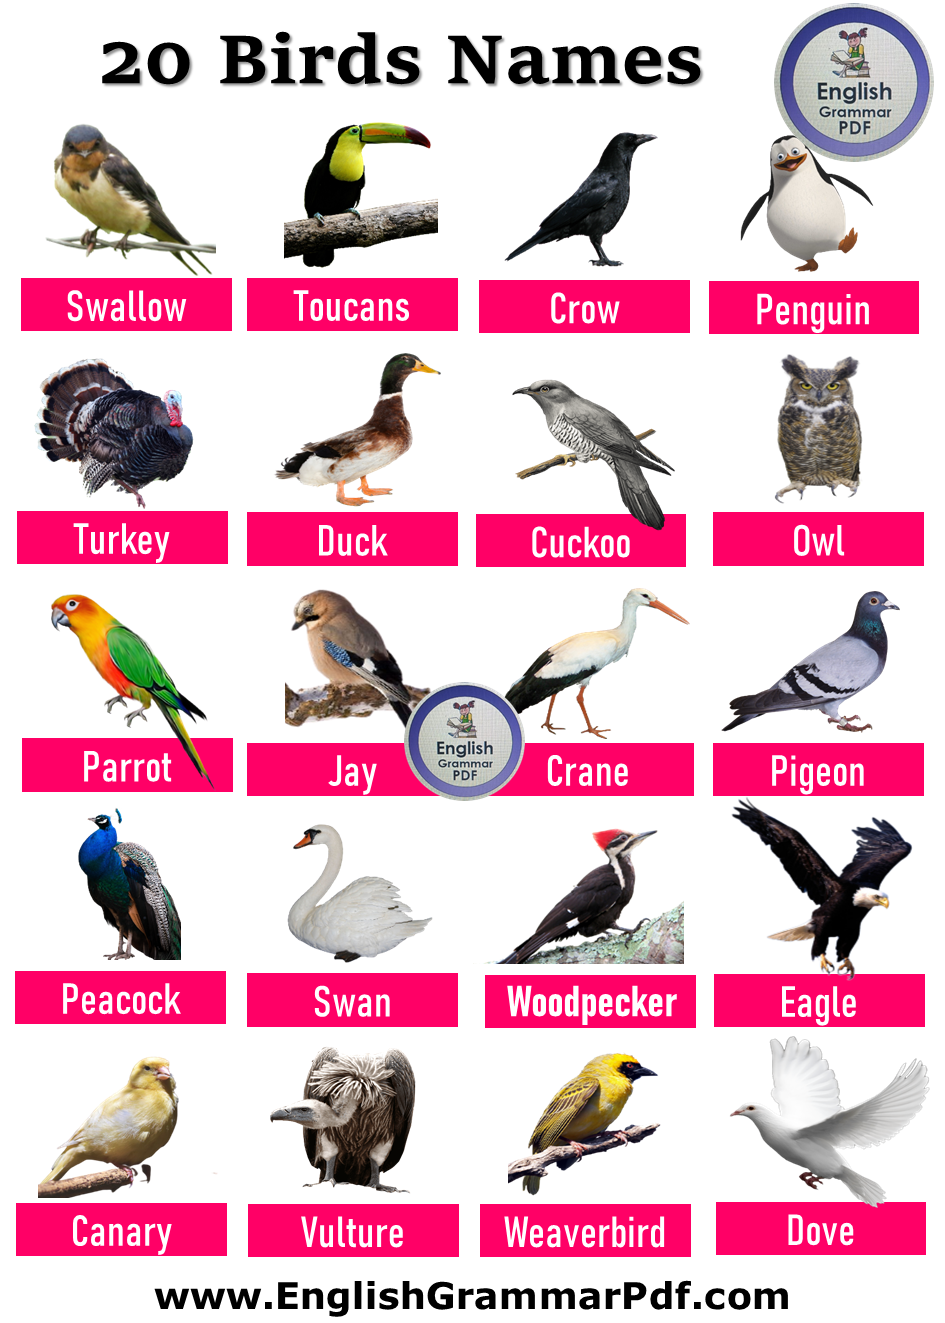 20 bird names